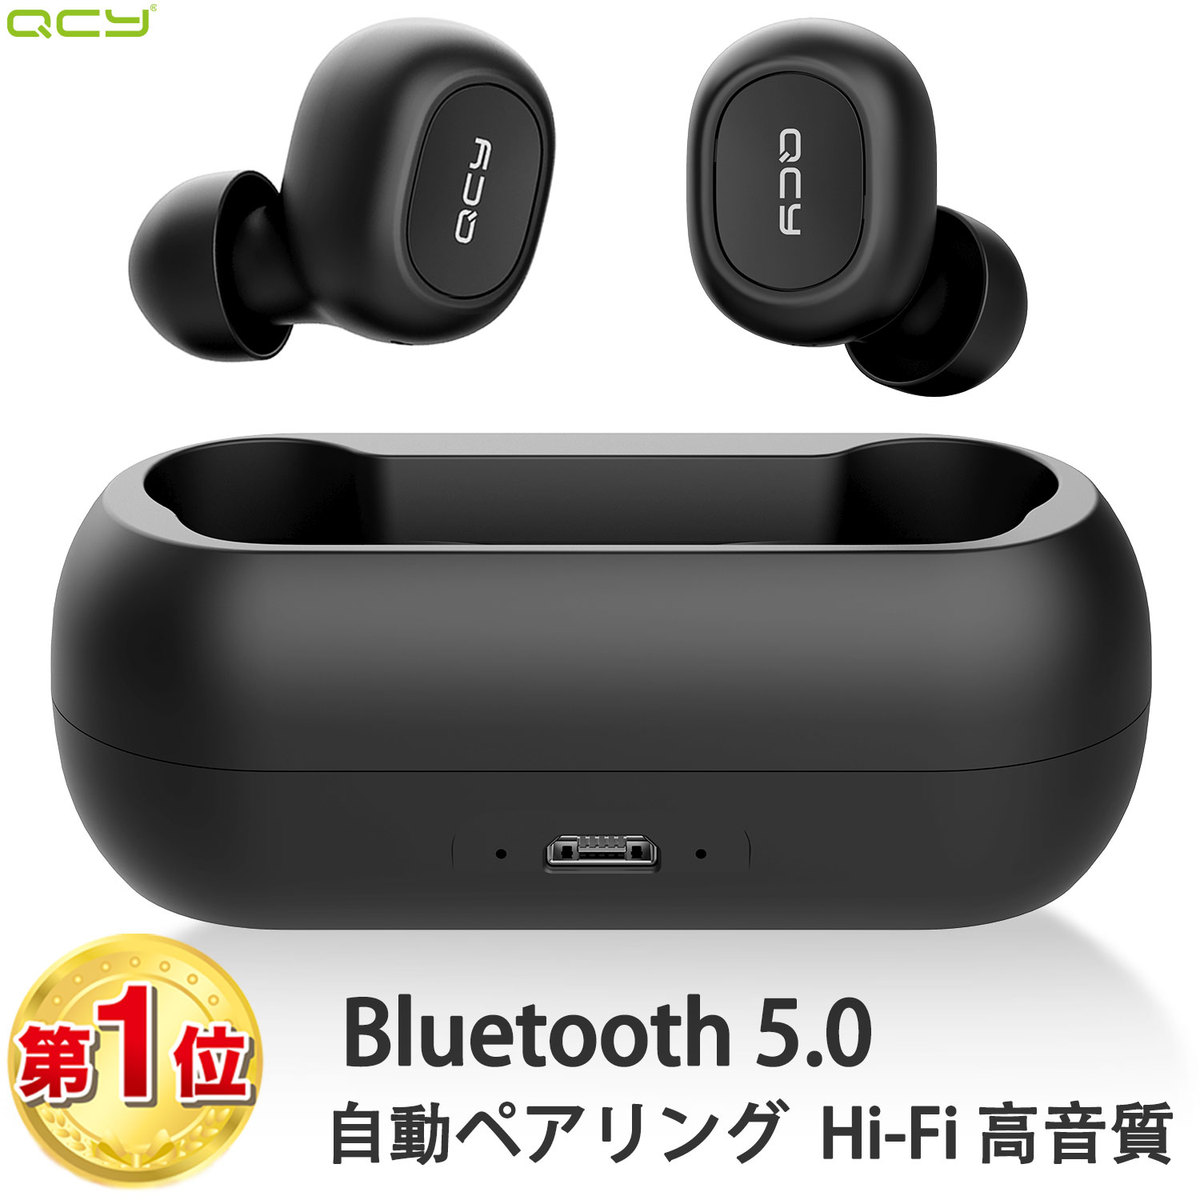 【楽天市場】QCY T1 ワイヤレスイヤホン Bluetooth5.0 完全ワイヤレス ブルートゥース イヤホン bluetooth イヤホン